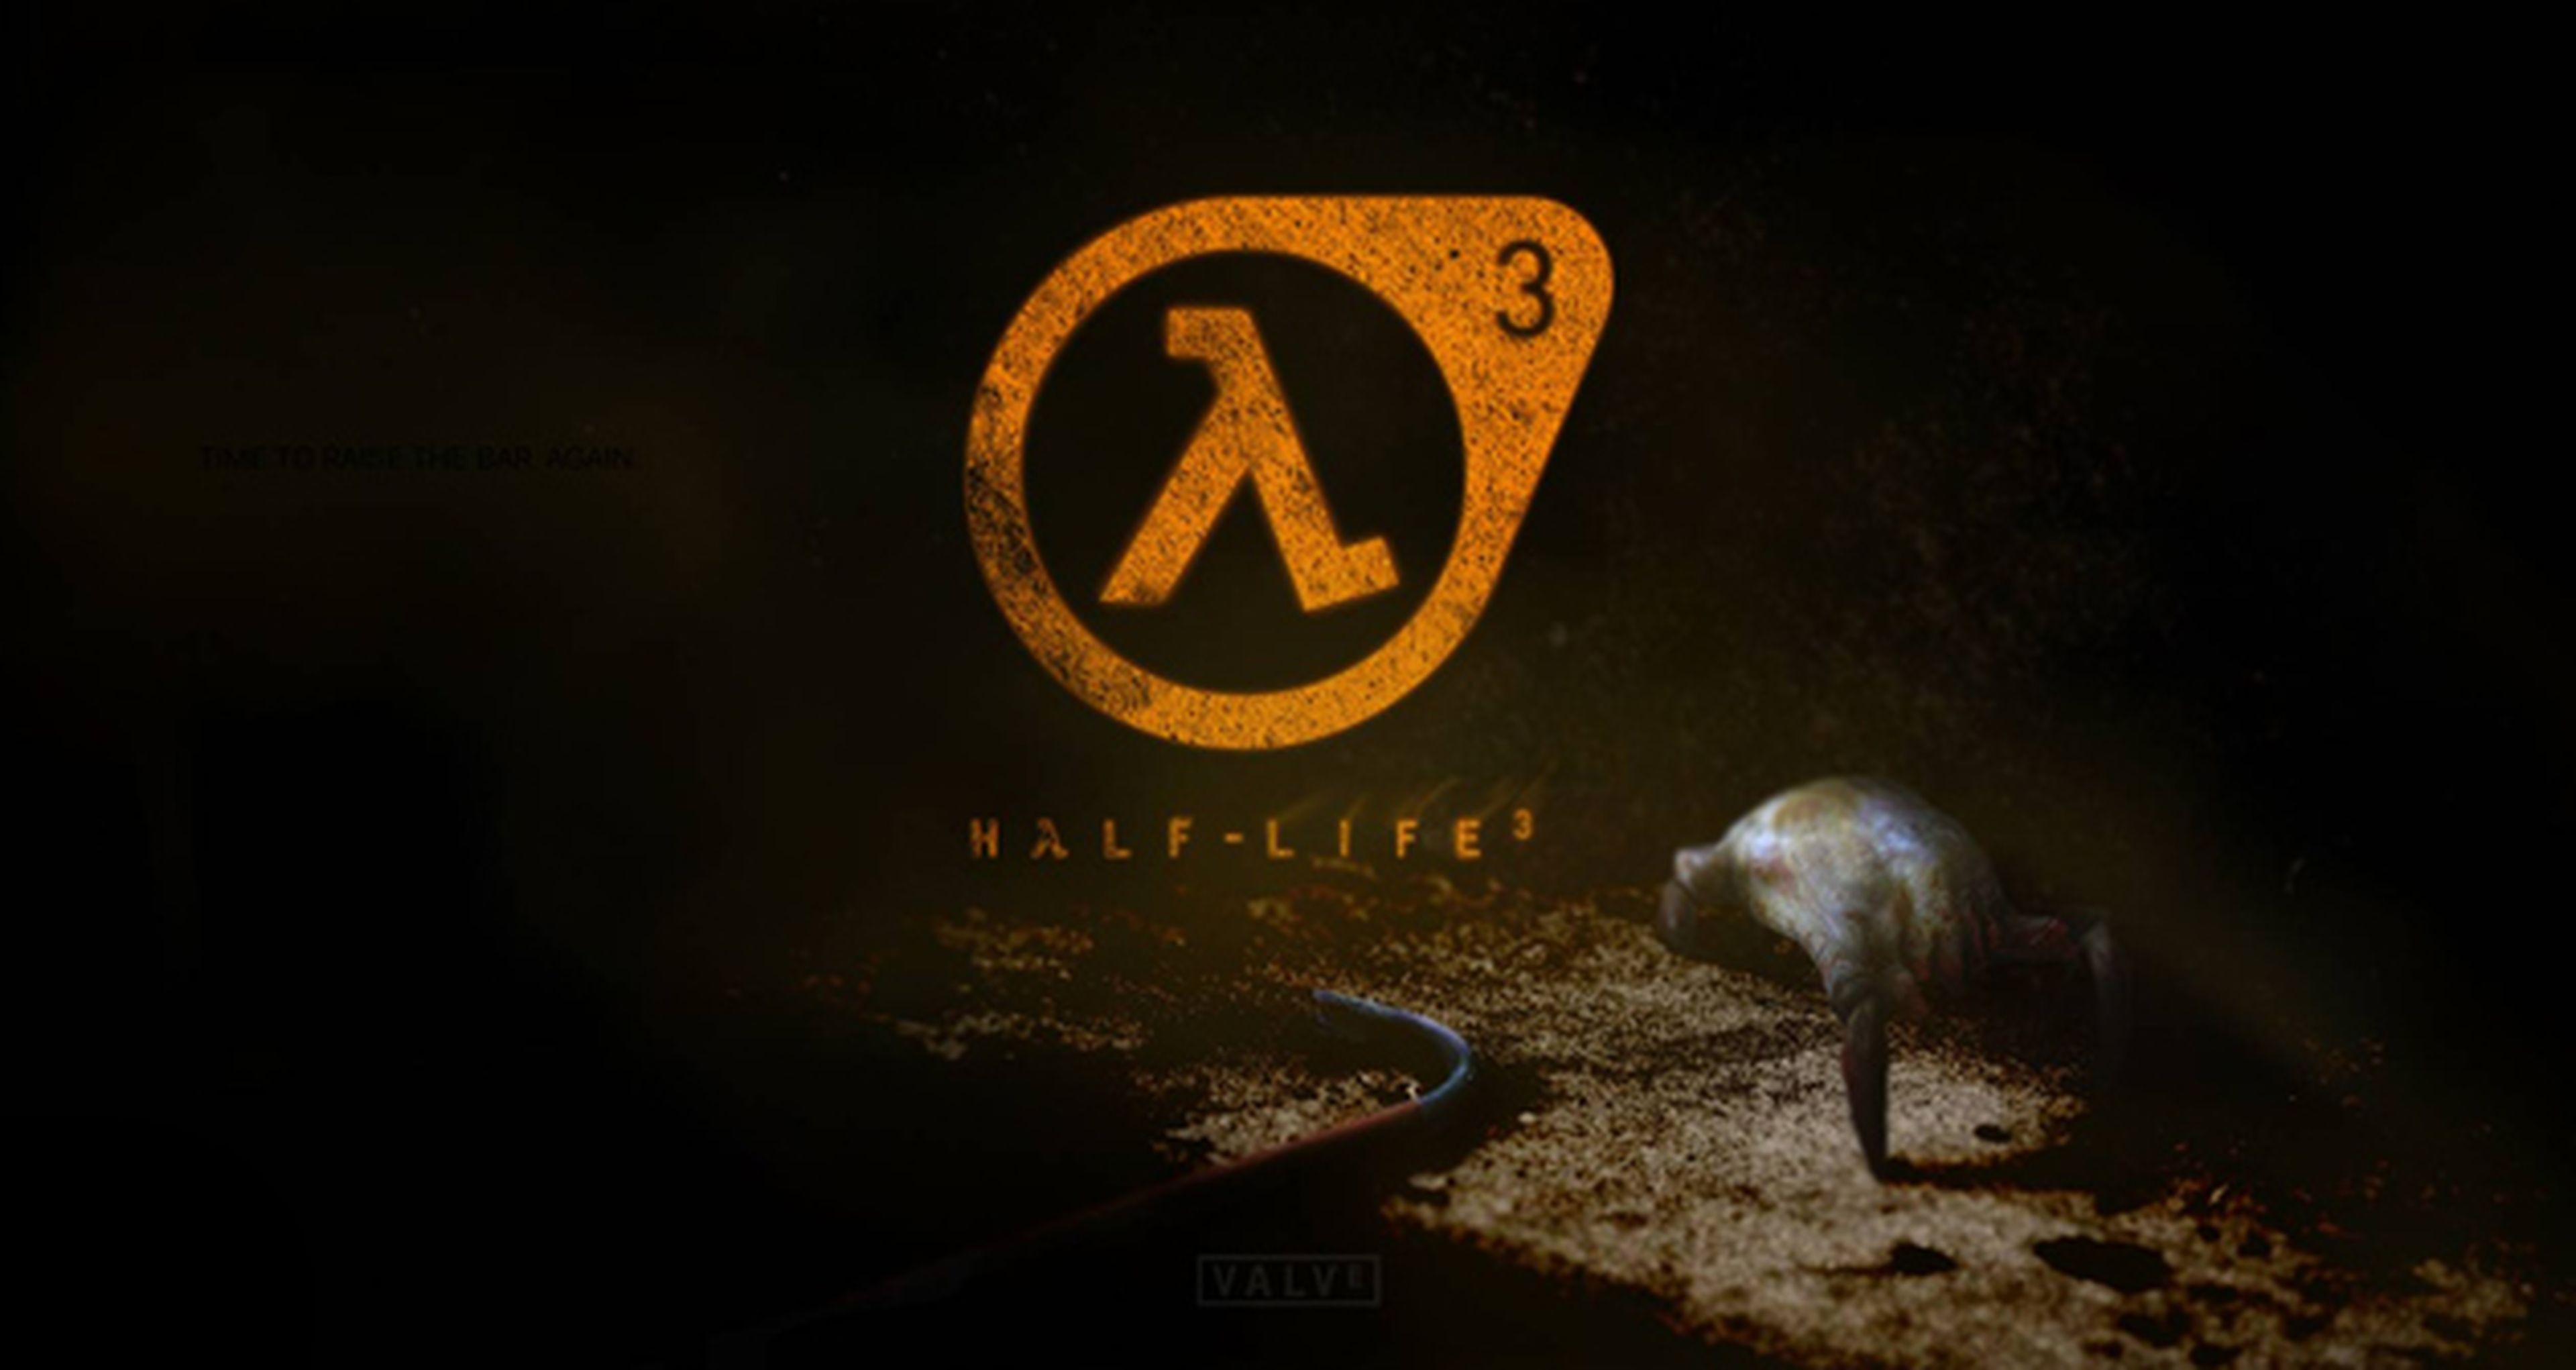 La marca registrada Half-Life 3 ha sido eliminada